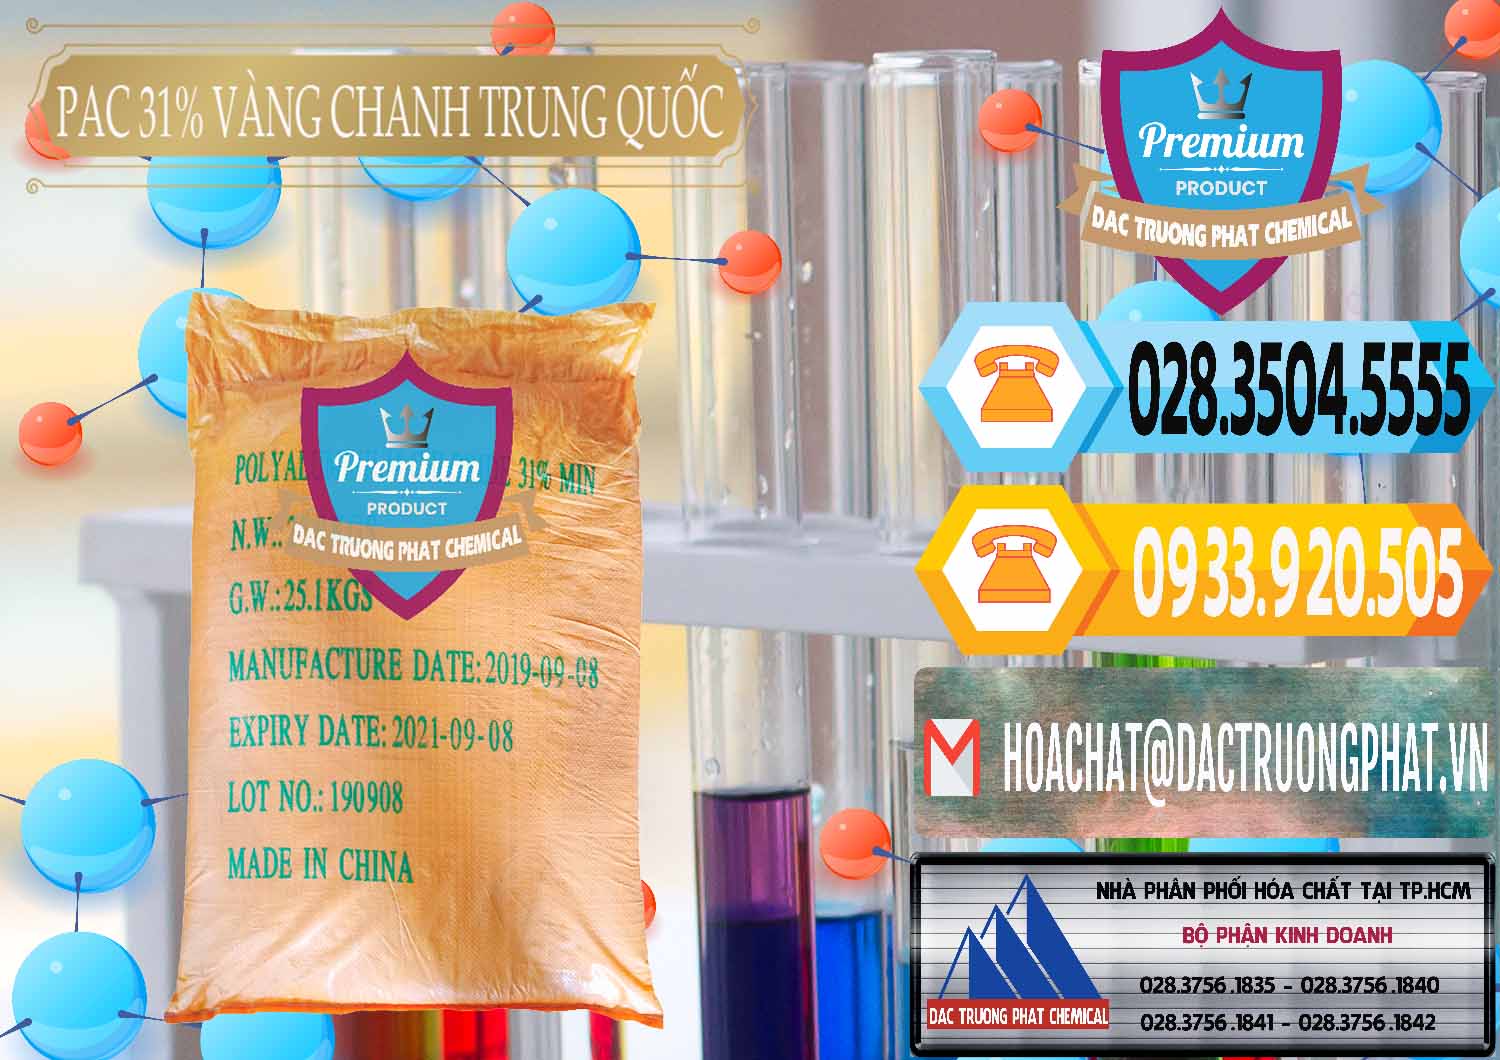 Đơn vị chuyên bán - phân phối PAC - Polyaluminium Chloride 28-31% Vàng Chanh Trung Quốc China - 0109 - Nơi chuyên phân phối ( nhập khẩu ) hóa chất tại TP.HCM - hoachattayrua.net